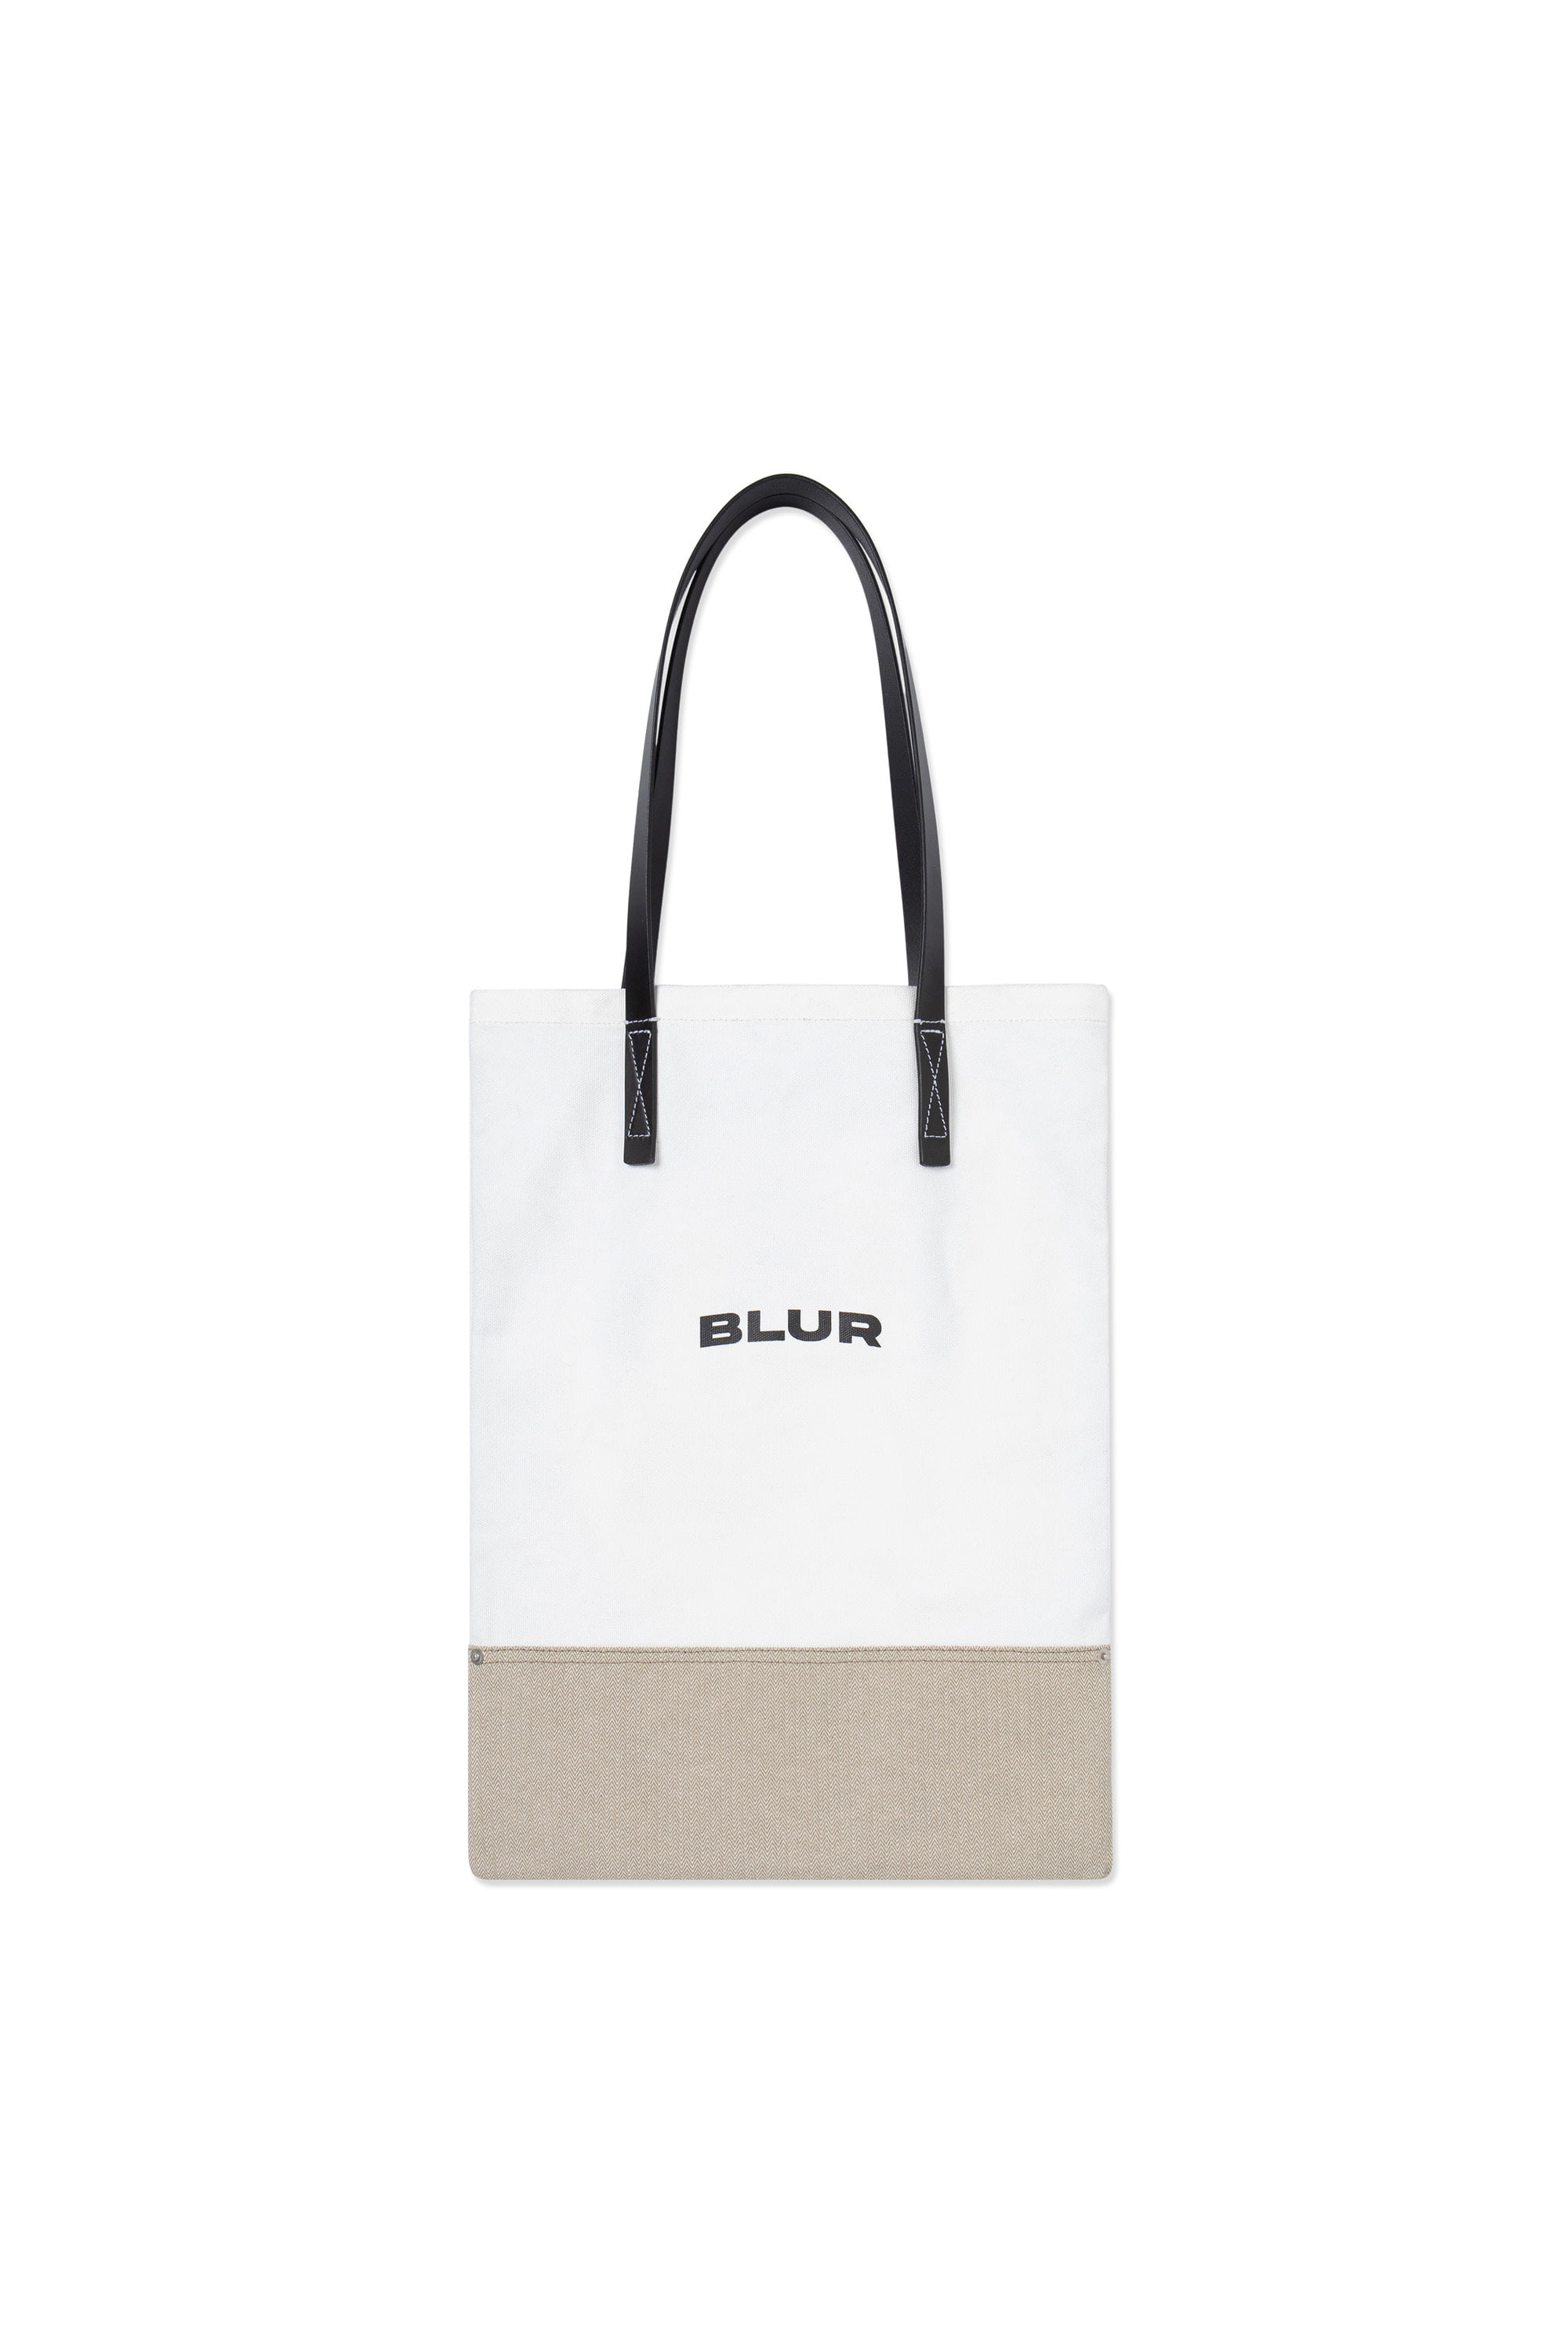 BLUR SHOULDER BAG - WHITE